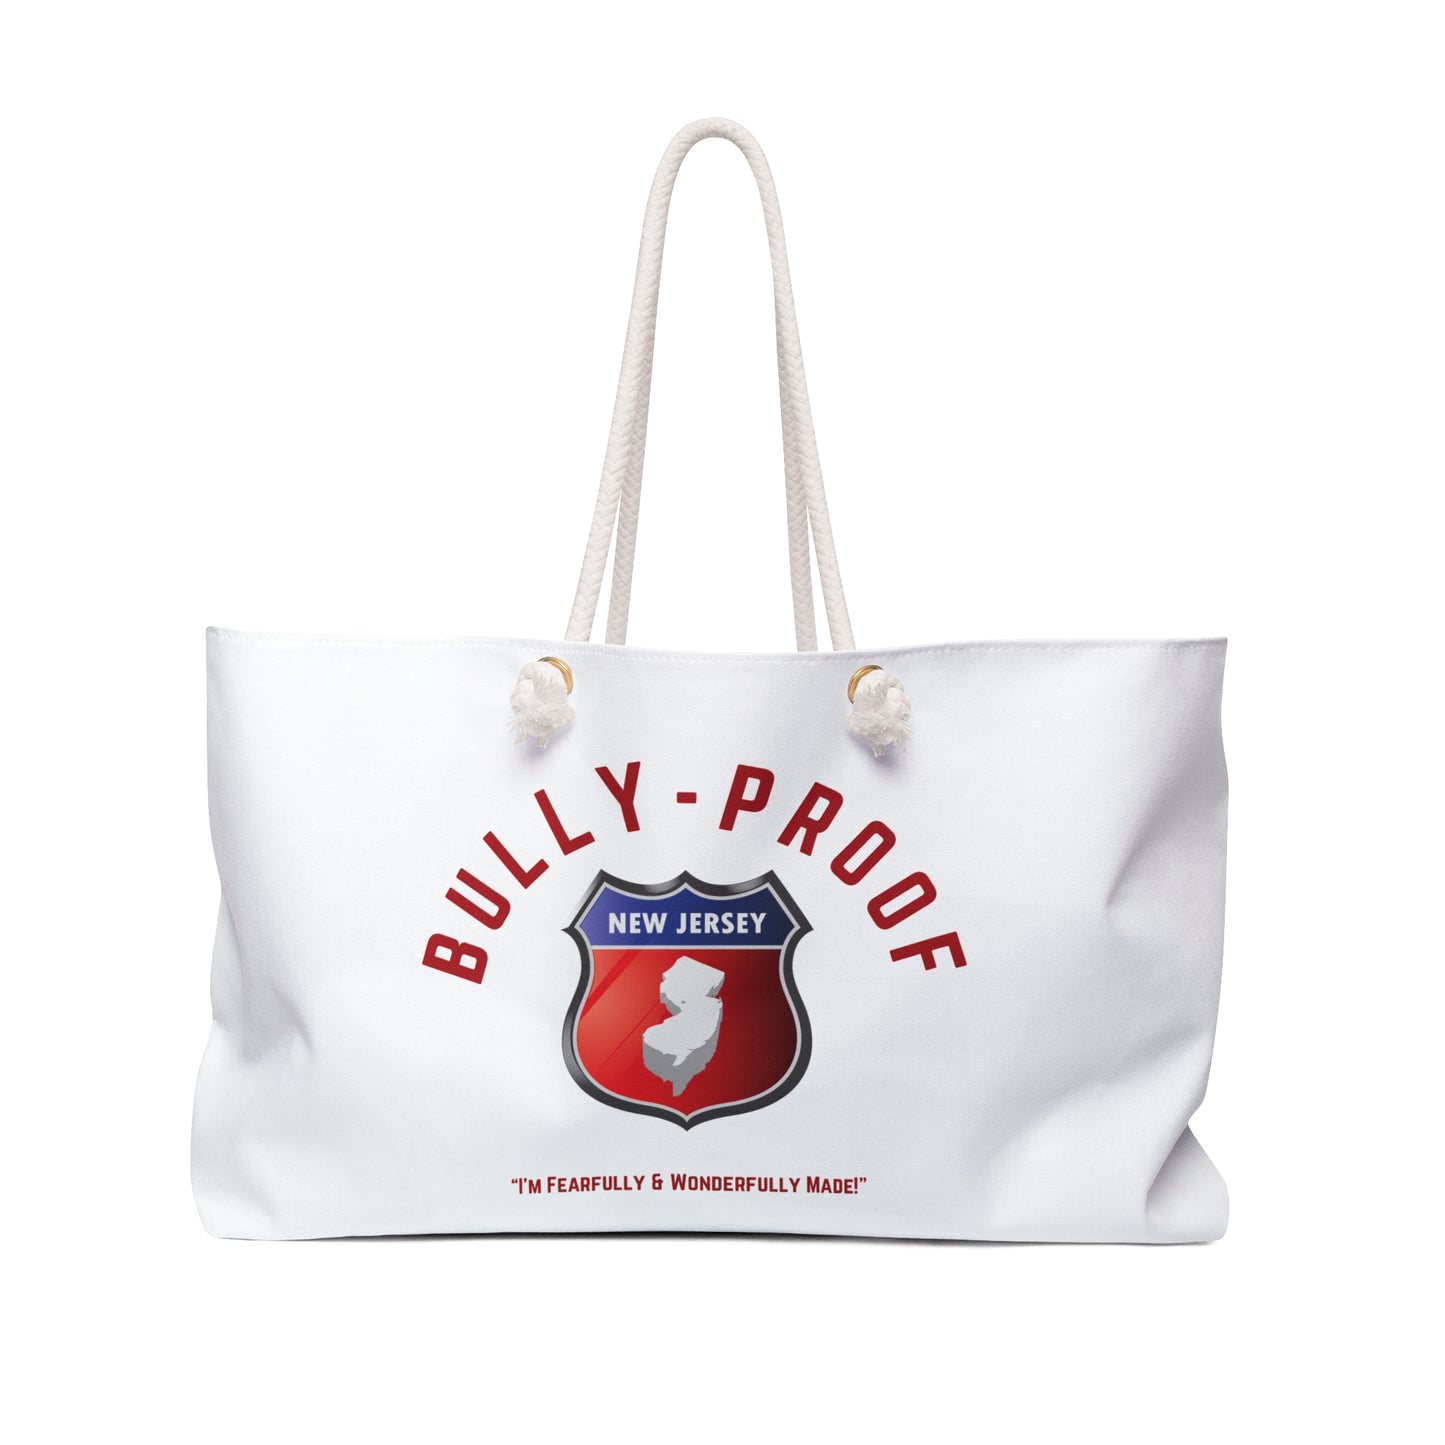 Bully-Proof NJ Weekender Bag